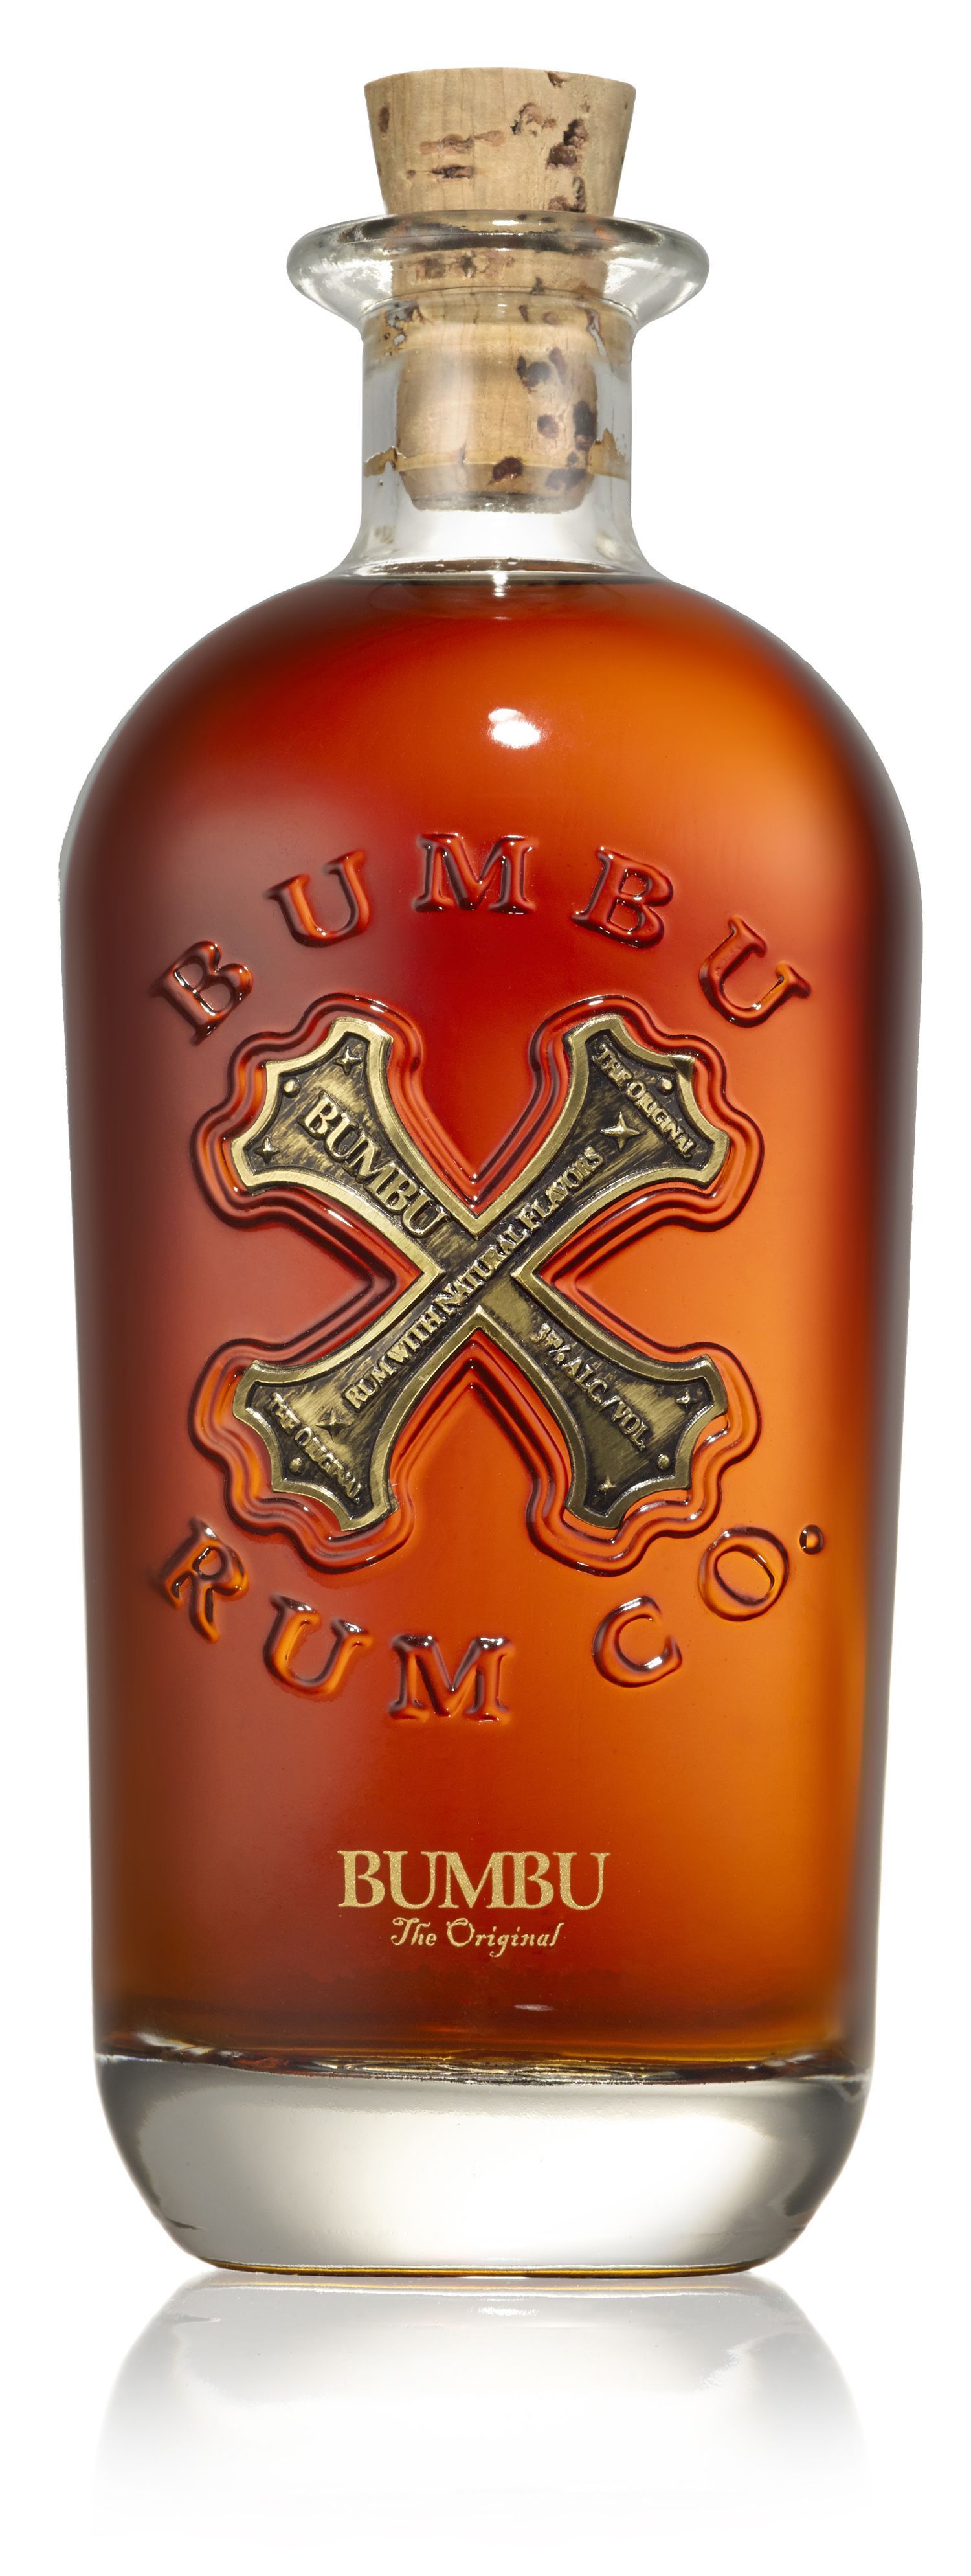 Bumbu Spiced Rum The Original, VINUM